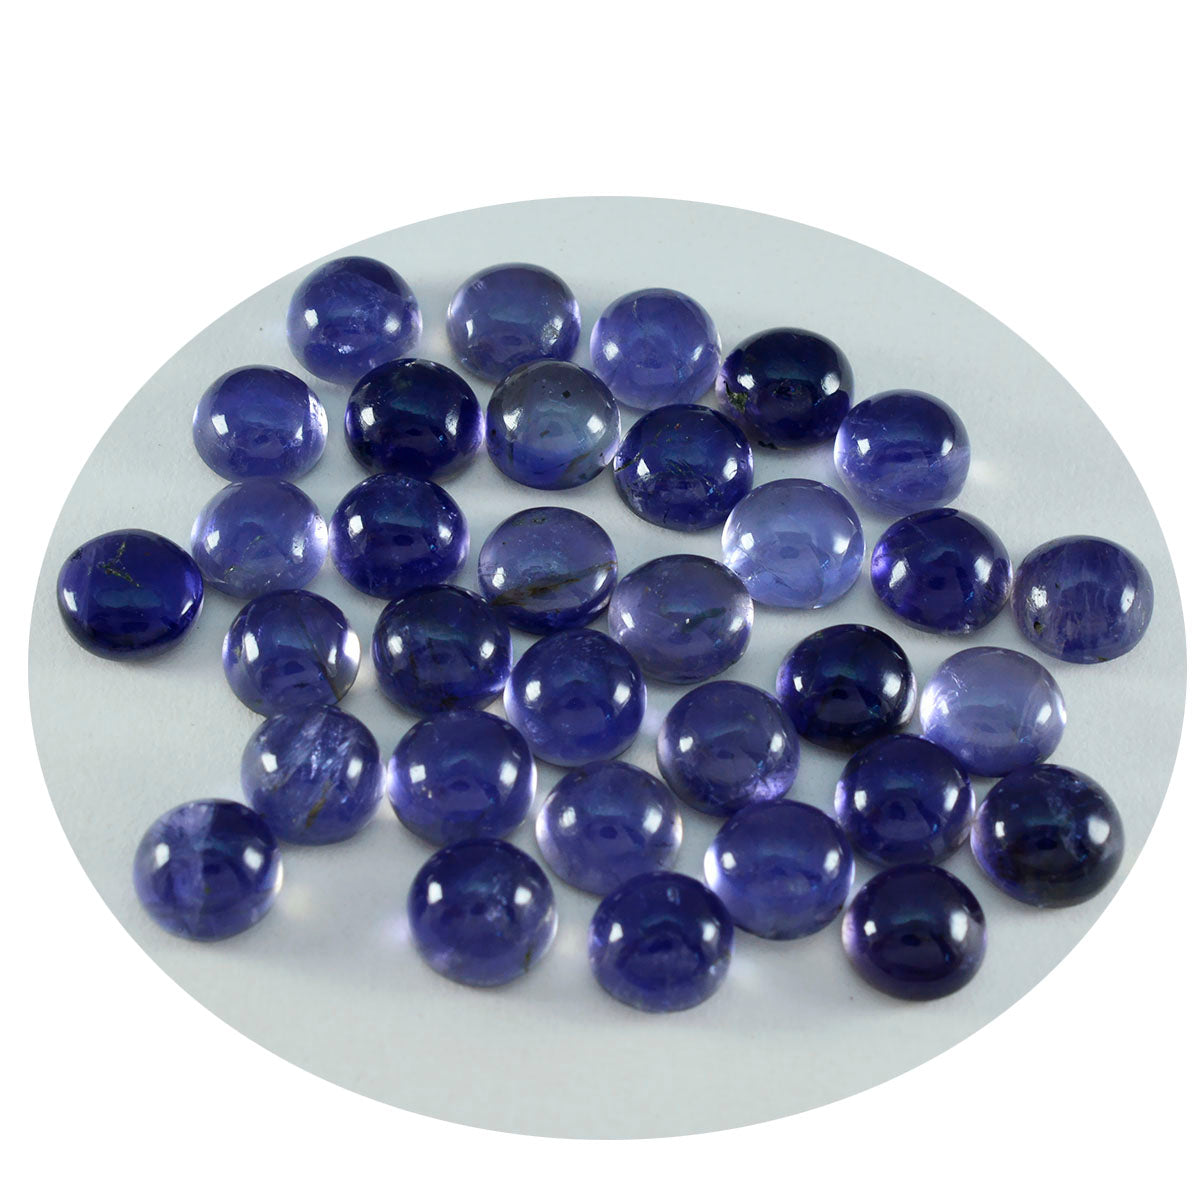 Riyogems 1 pc cabochon iolite bleu 7x7 mm forme ronde a + qualité gemme en vrac